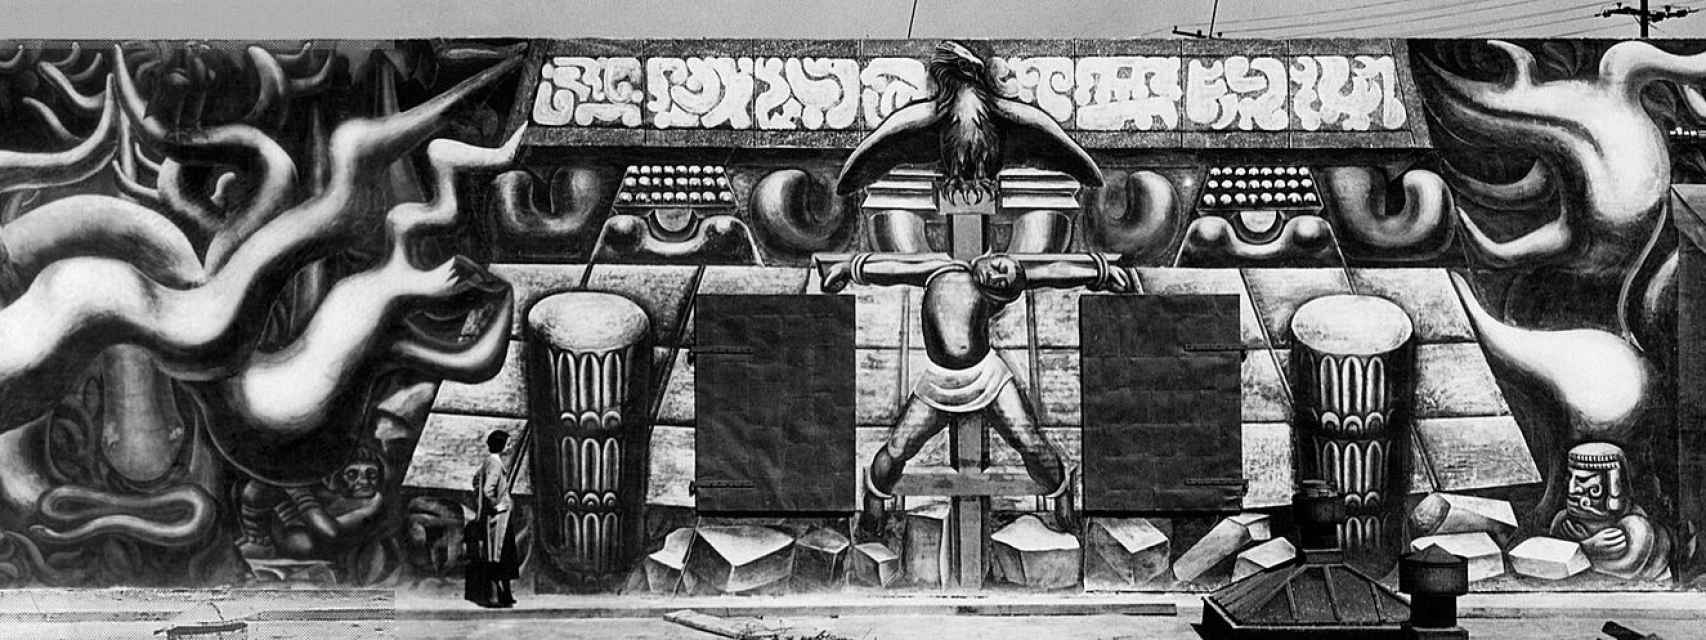 El mural 'Tropical America' de Siqueiros